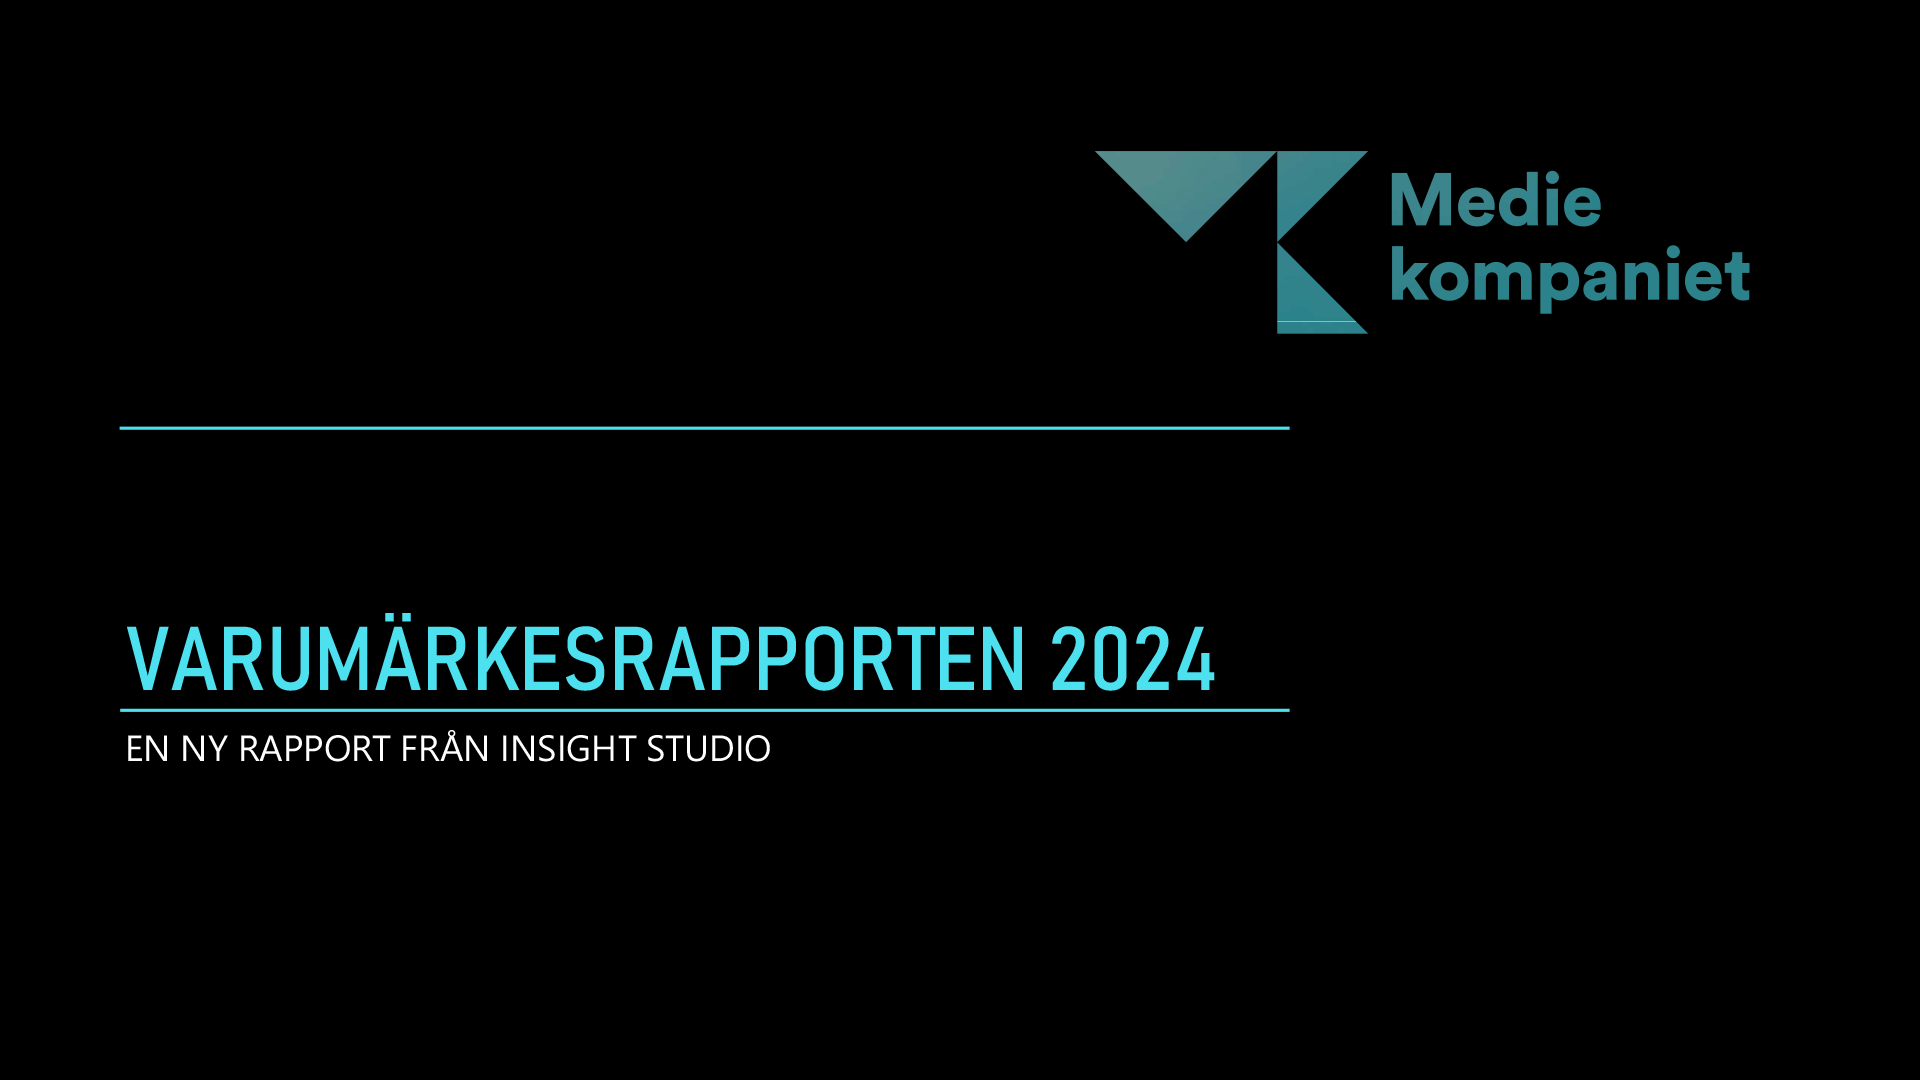 Mediekompaniet - Varumärkesrapporten 2024